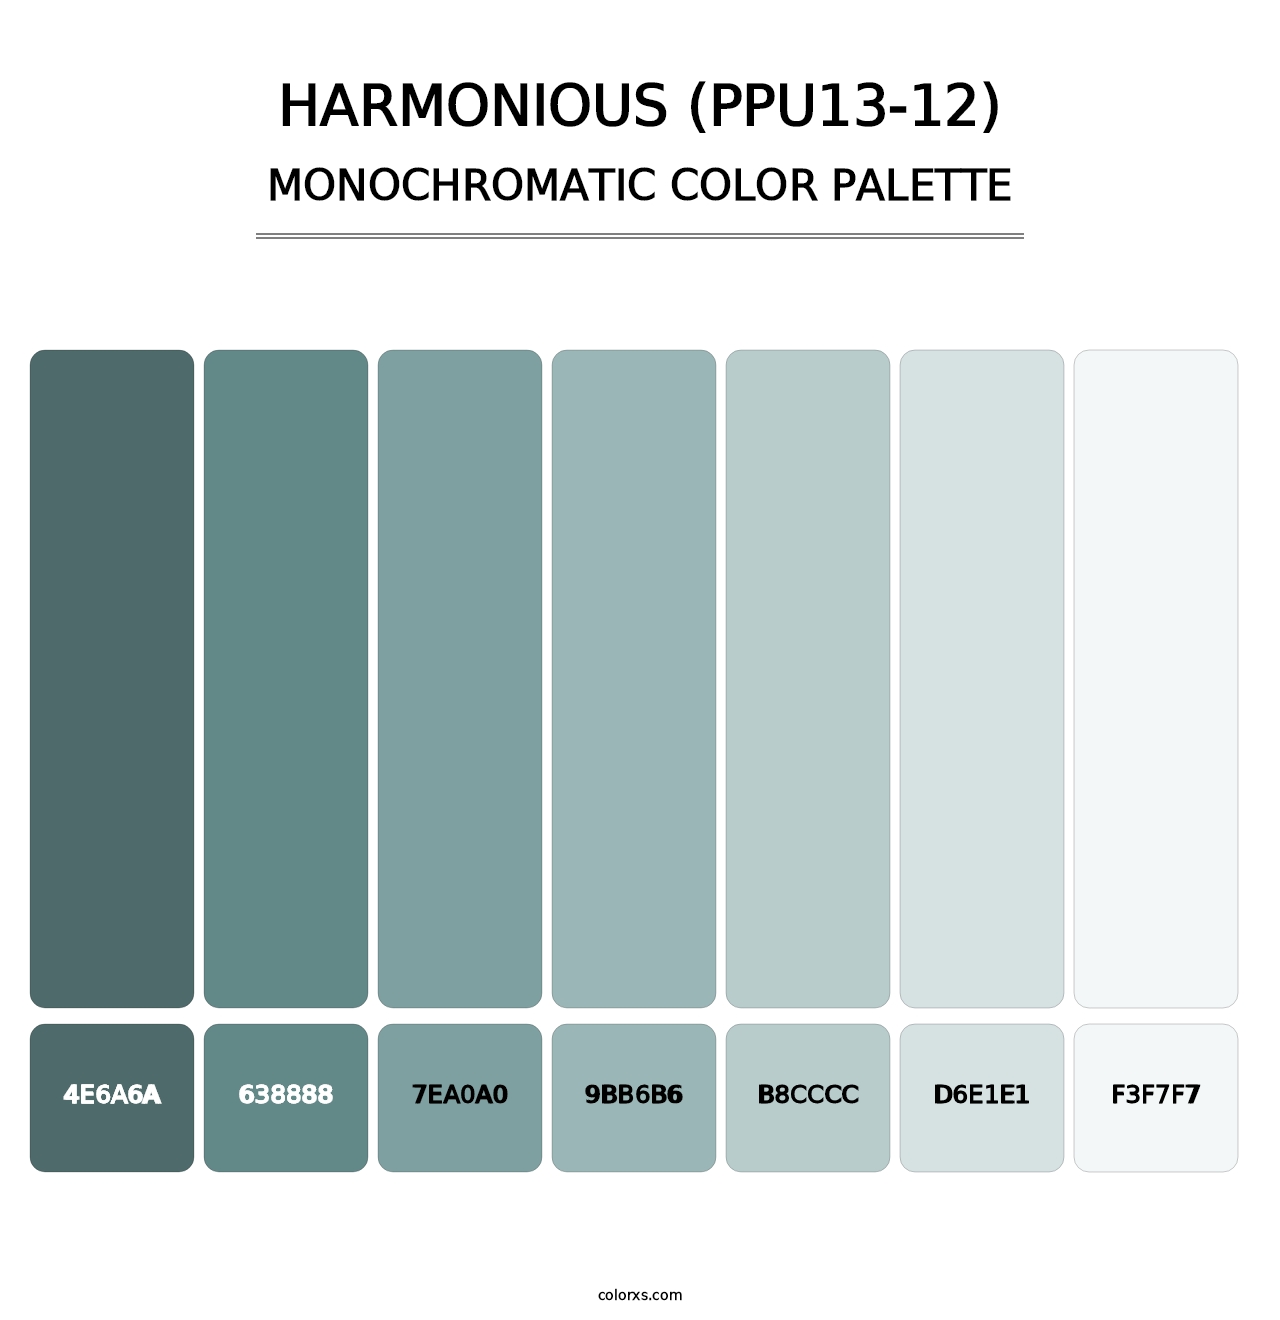 Harmonious (PPU13-12) - Monochromatic Color Palette